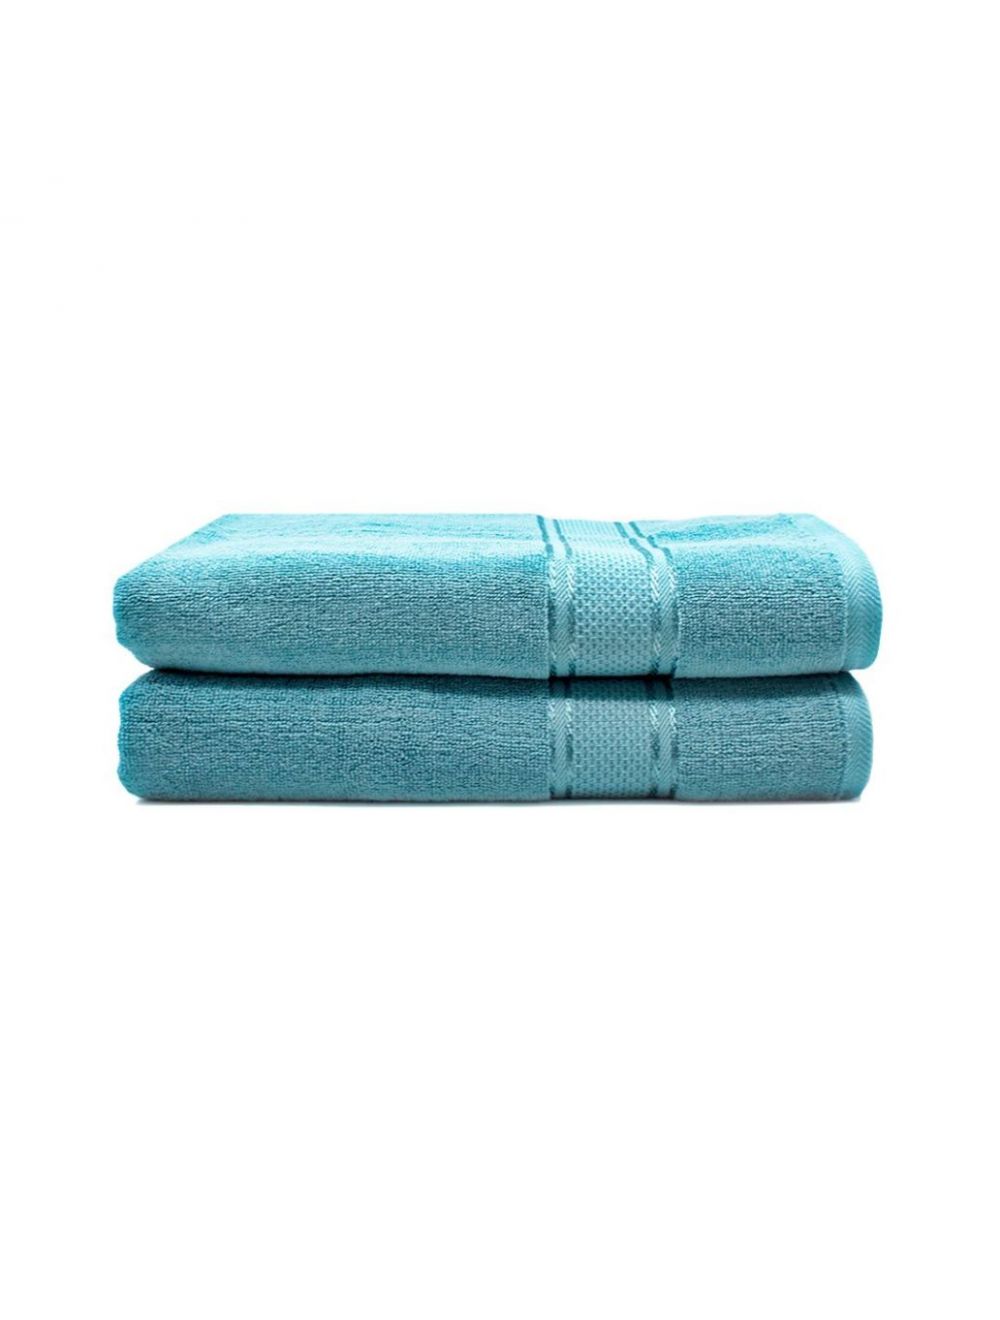 Rishahome 100% Cotton 2-Piece Bath Towel Set, Premium Collection, Sky Blue-14RHFT057